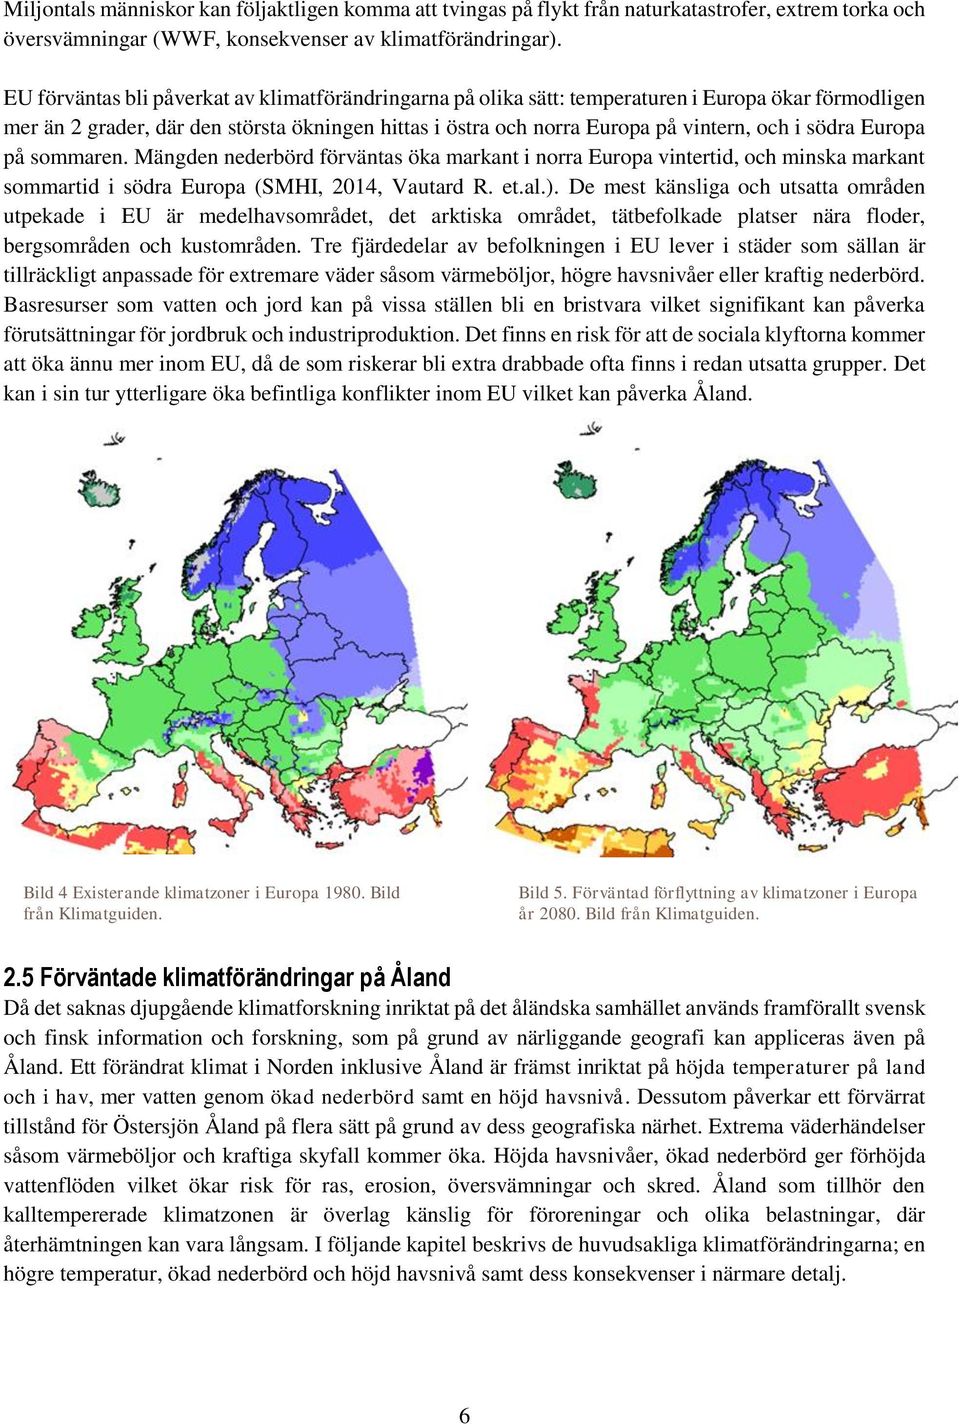 södra Europa på sommaren. Mängden nederbörd förväntas öka markant i norra Europa vintertid, och minska markant sommartid i södra Europa (SMHI, 2014, Vautard R. et.al.).